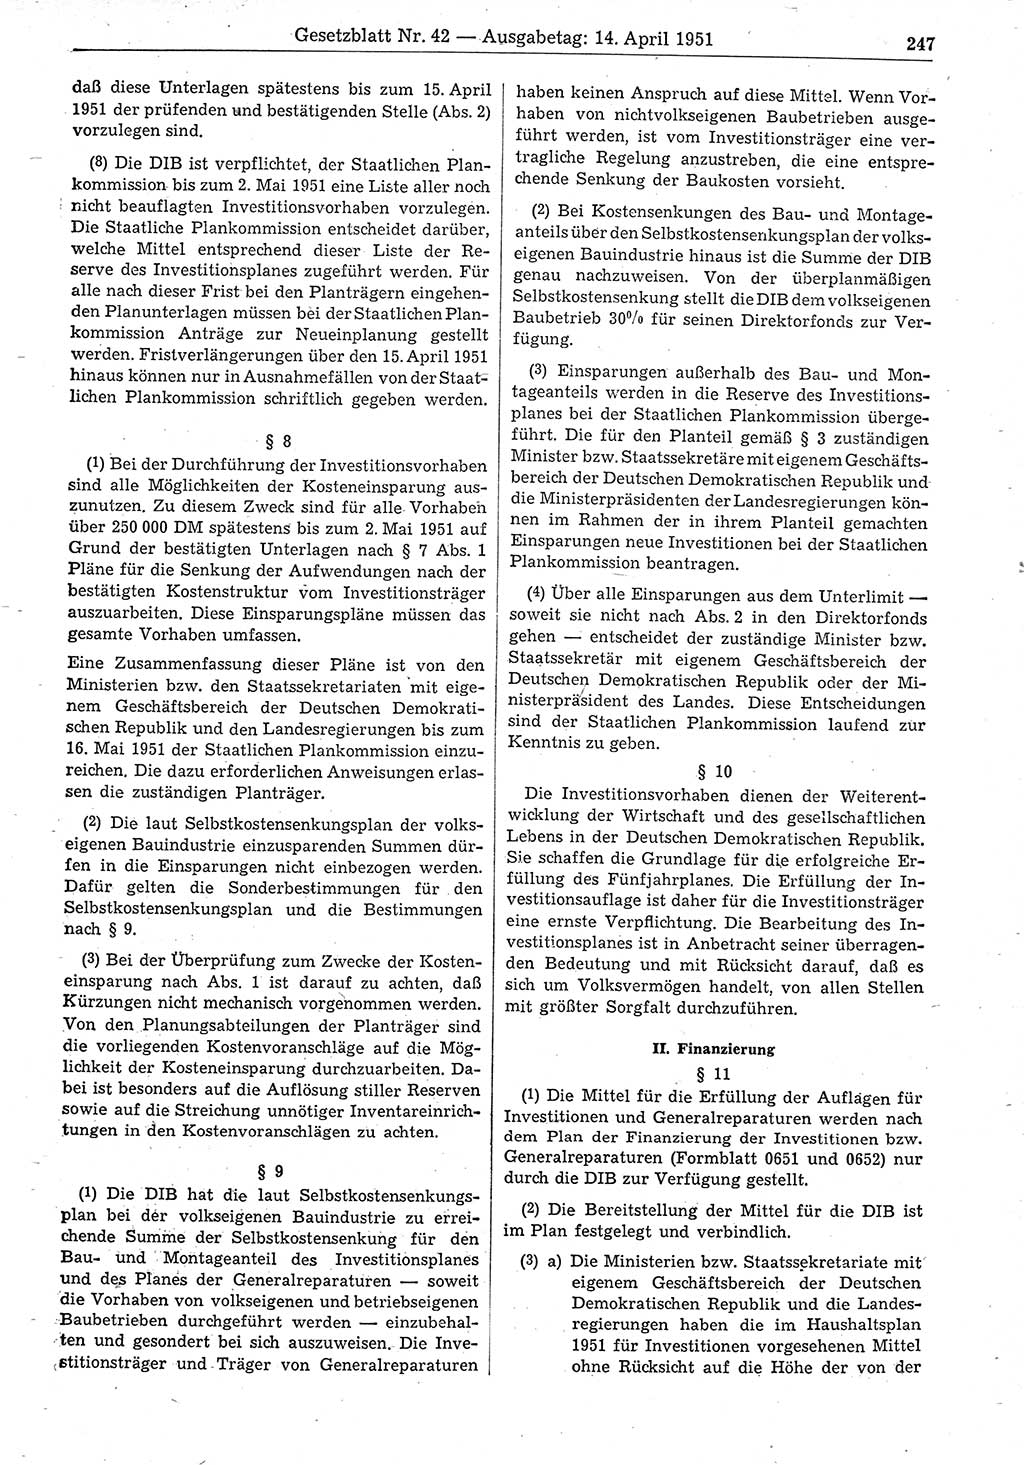 Gesetzblatt (GBl.) der Deutschen Demokratischen Republik (DDR) 1951, Seite 247 (GBl. DDR 1951, S. 247)